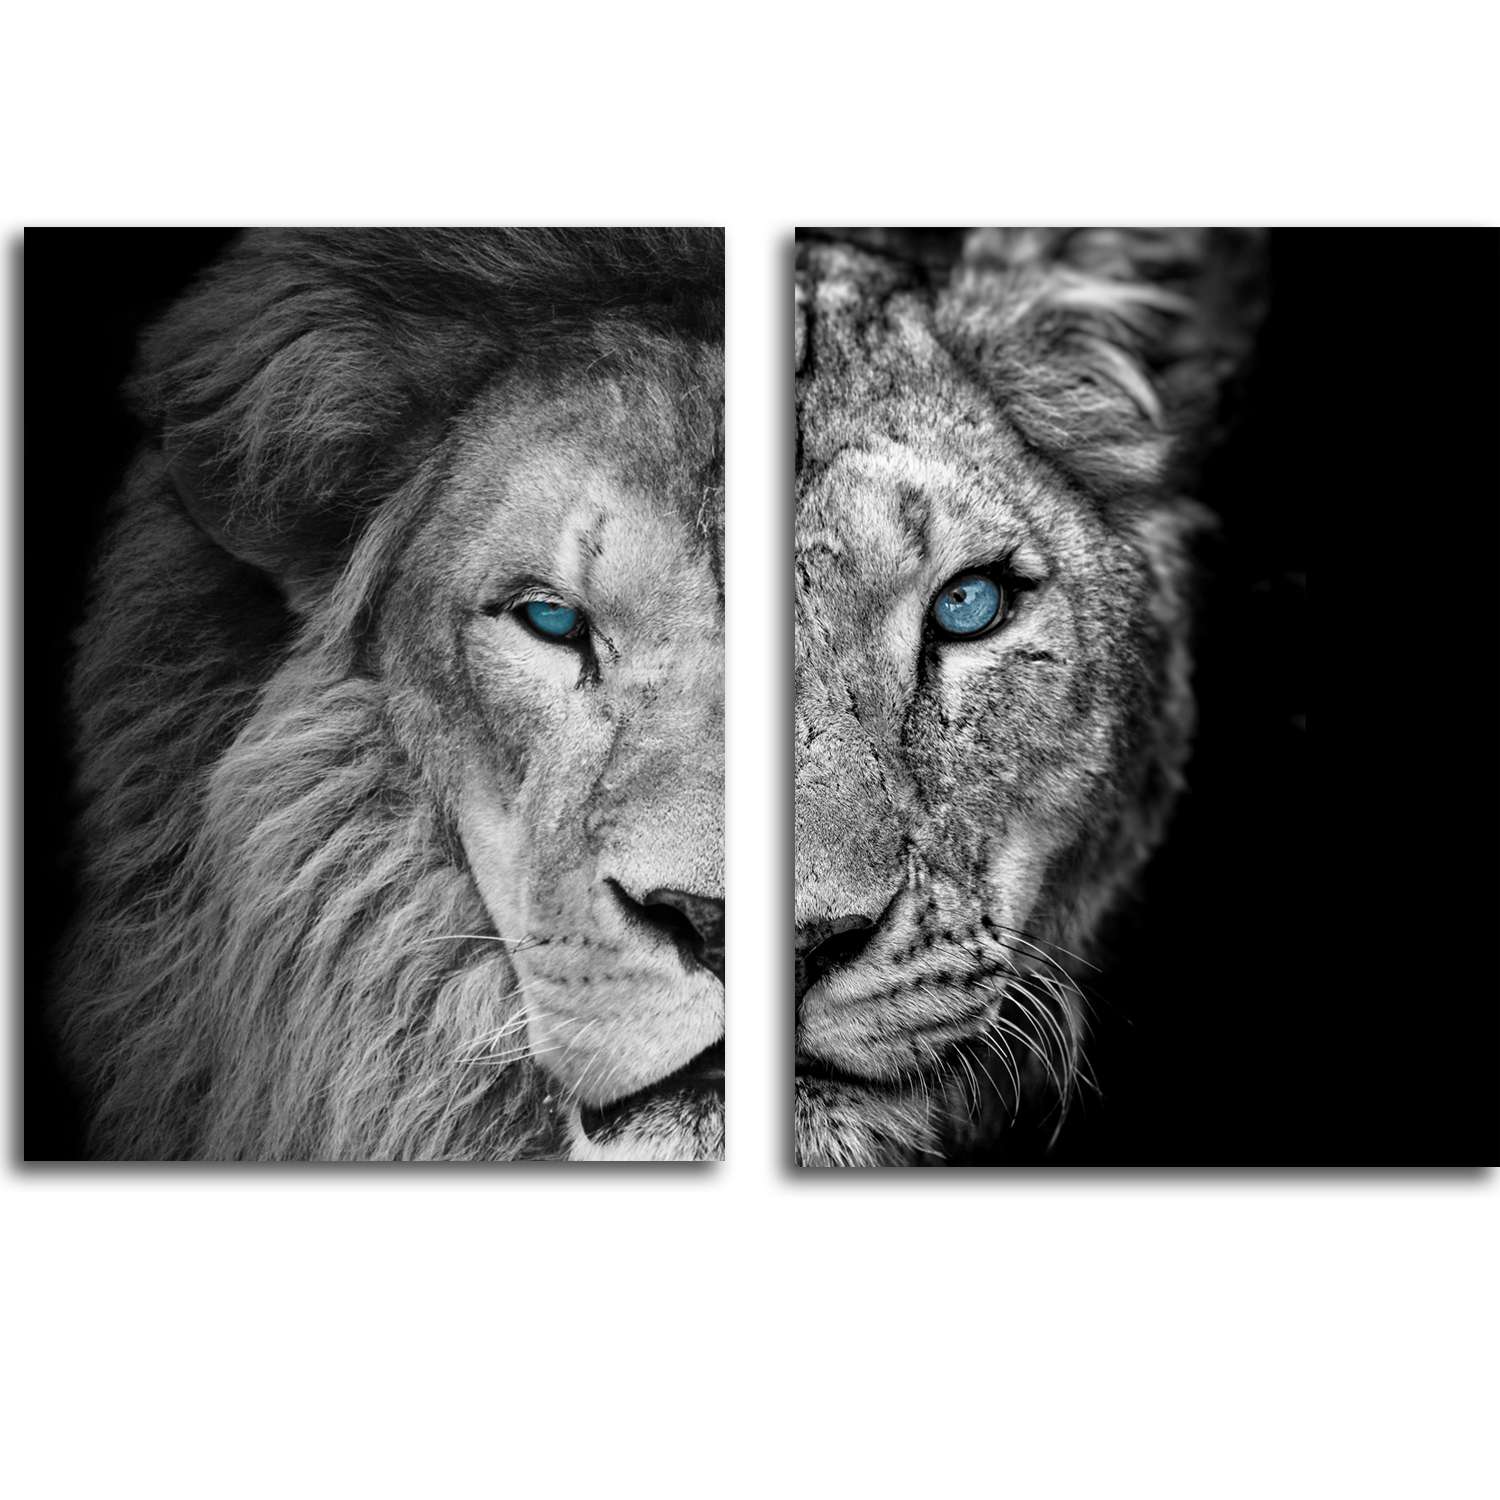 Лев с львицей (64 фото)